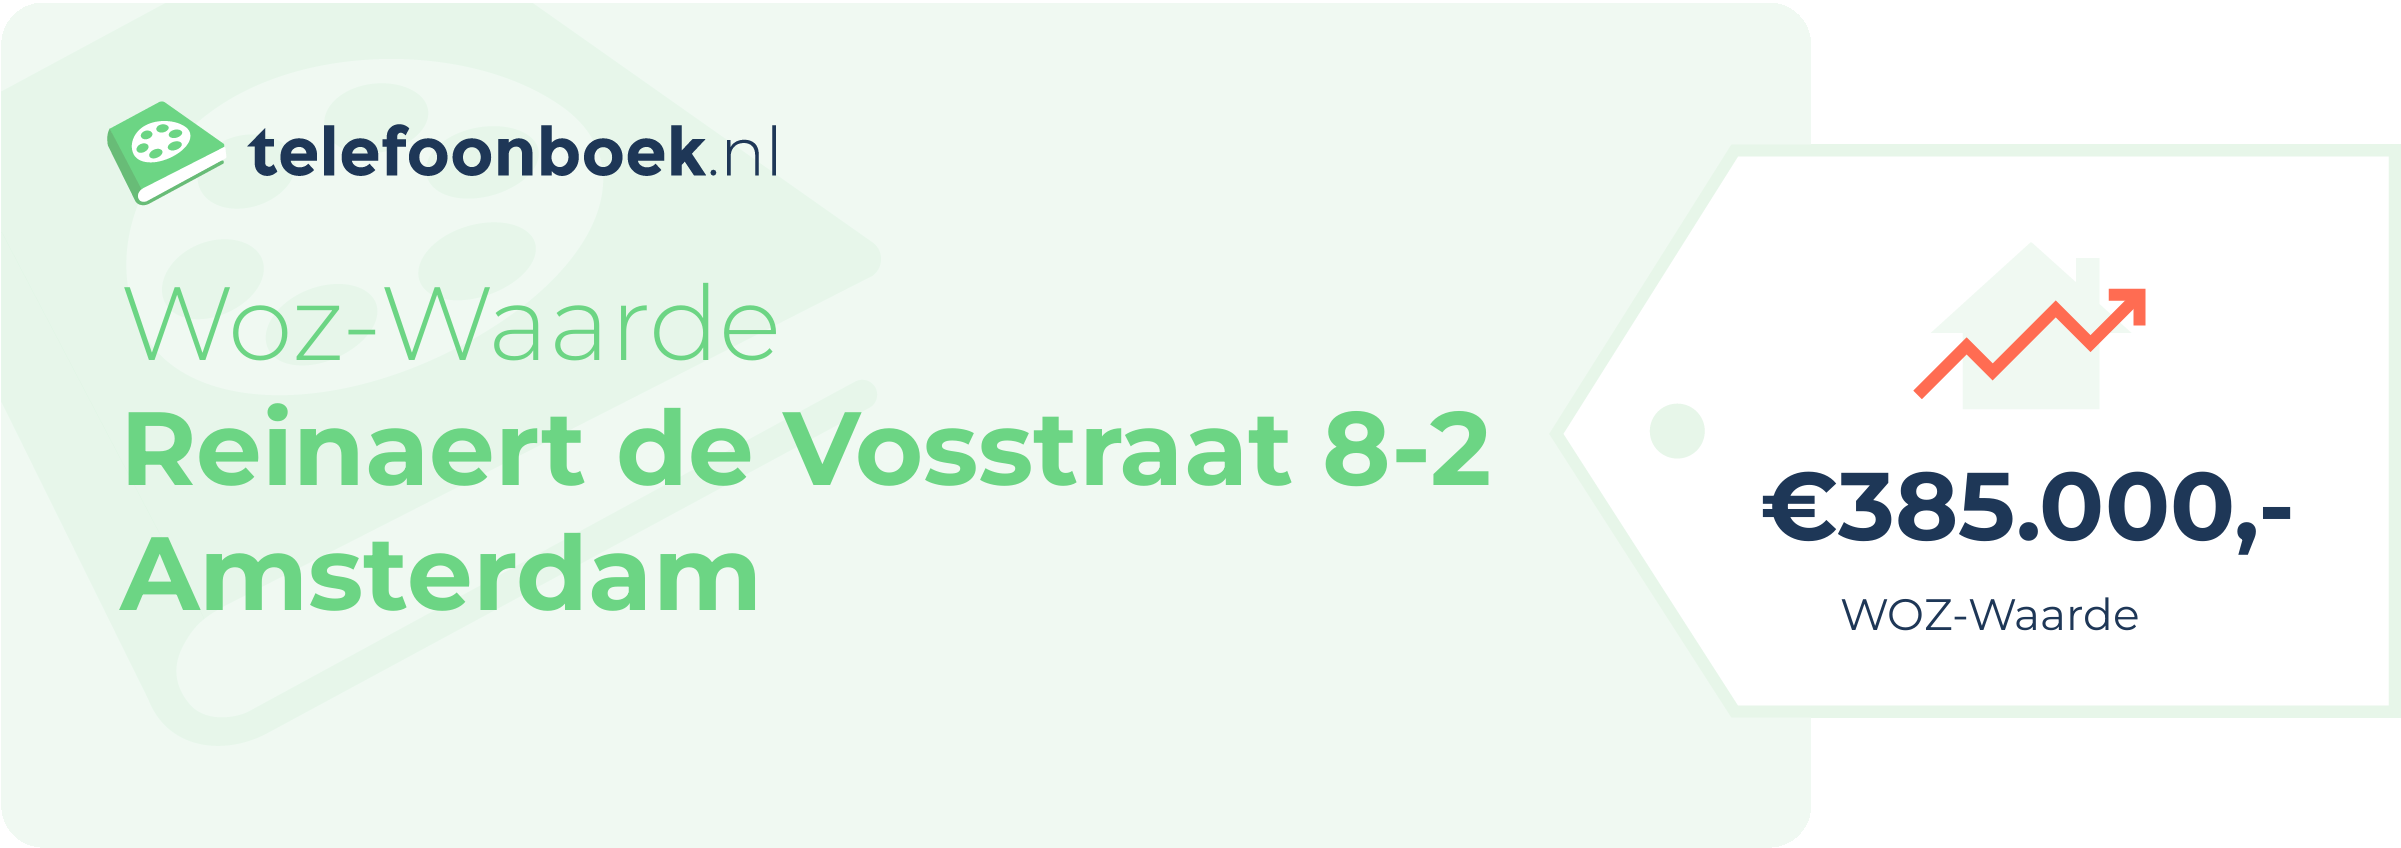 WOZ-waarde Reinaert De Vosstraat 8-2 Amsterdam